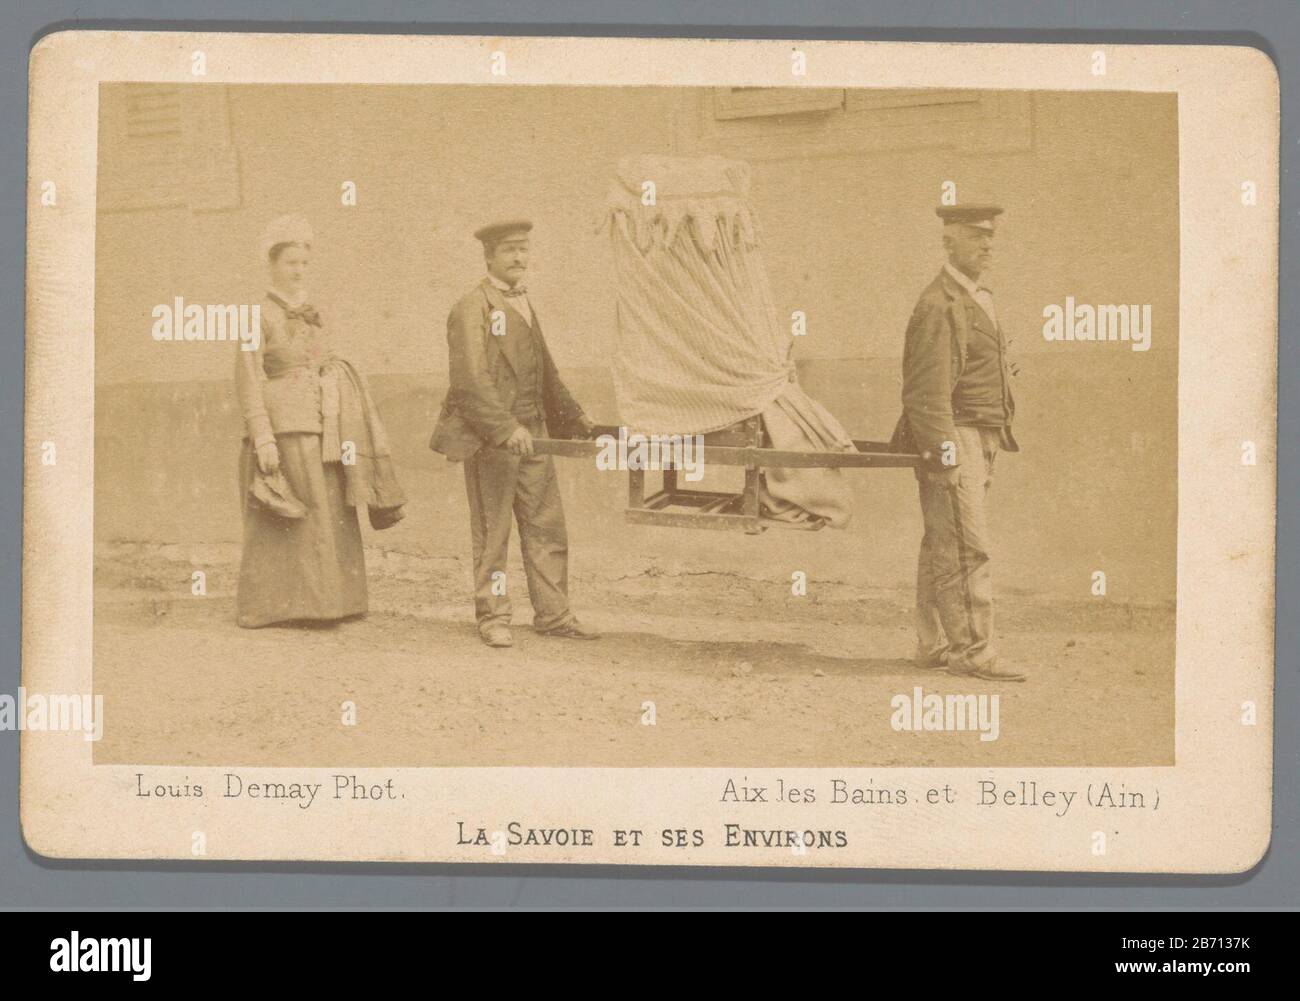 La Savoie et ses environs Twee mannen dragen een persoon in een draagstoel; een vrouw loopt erachter. Fabricant : fotograaf: Louis Demay (vermeld op object) Dating: 1870 - 1880 Dimensions: Geheel: H 71 mm × b 108 mm Banque D'Images